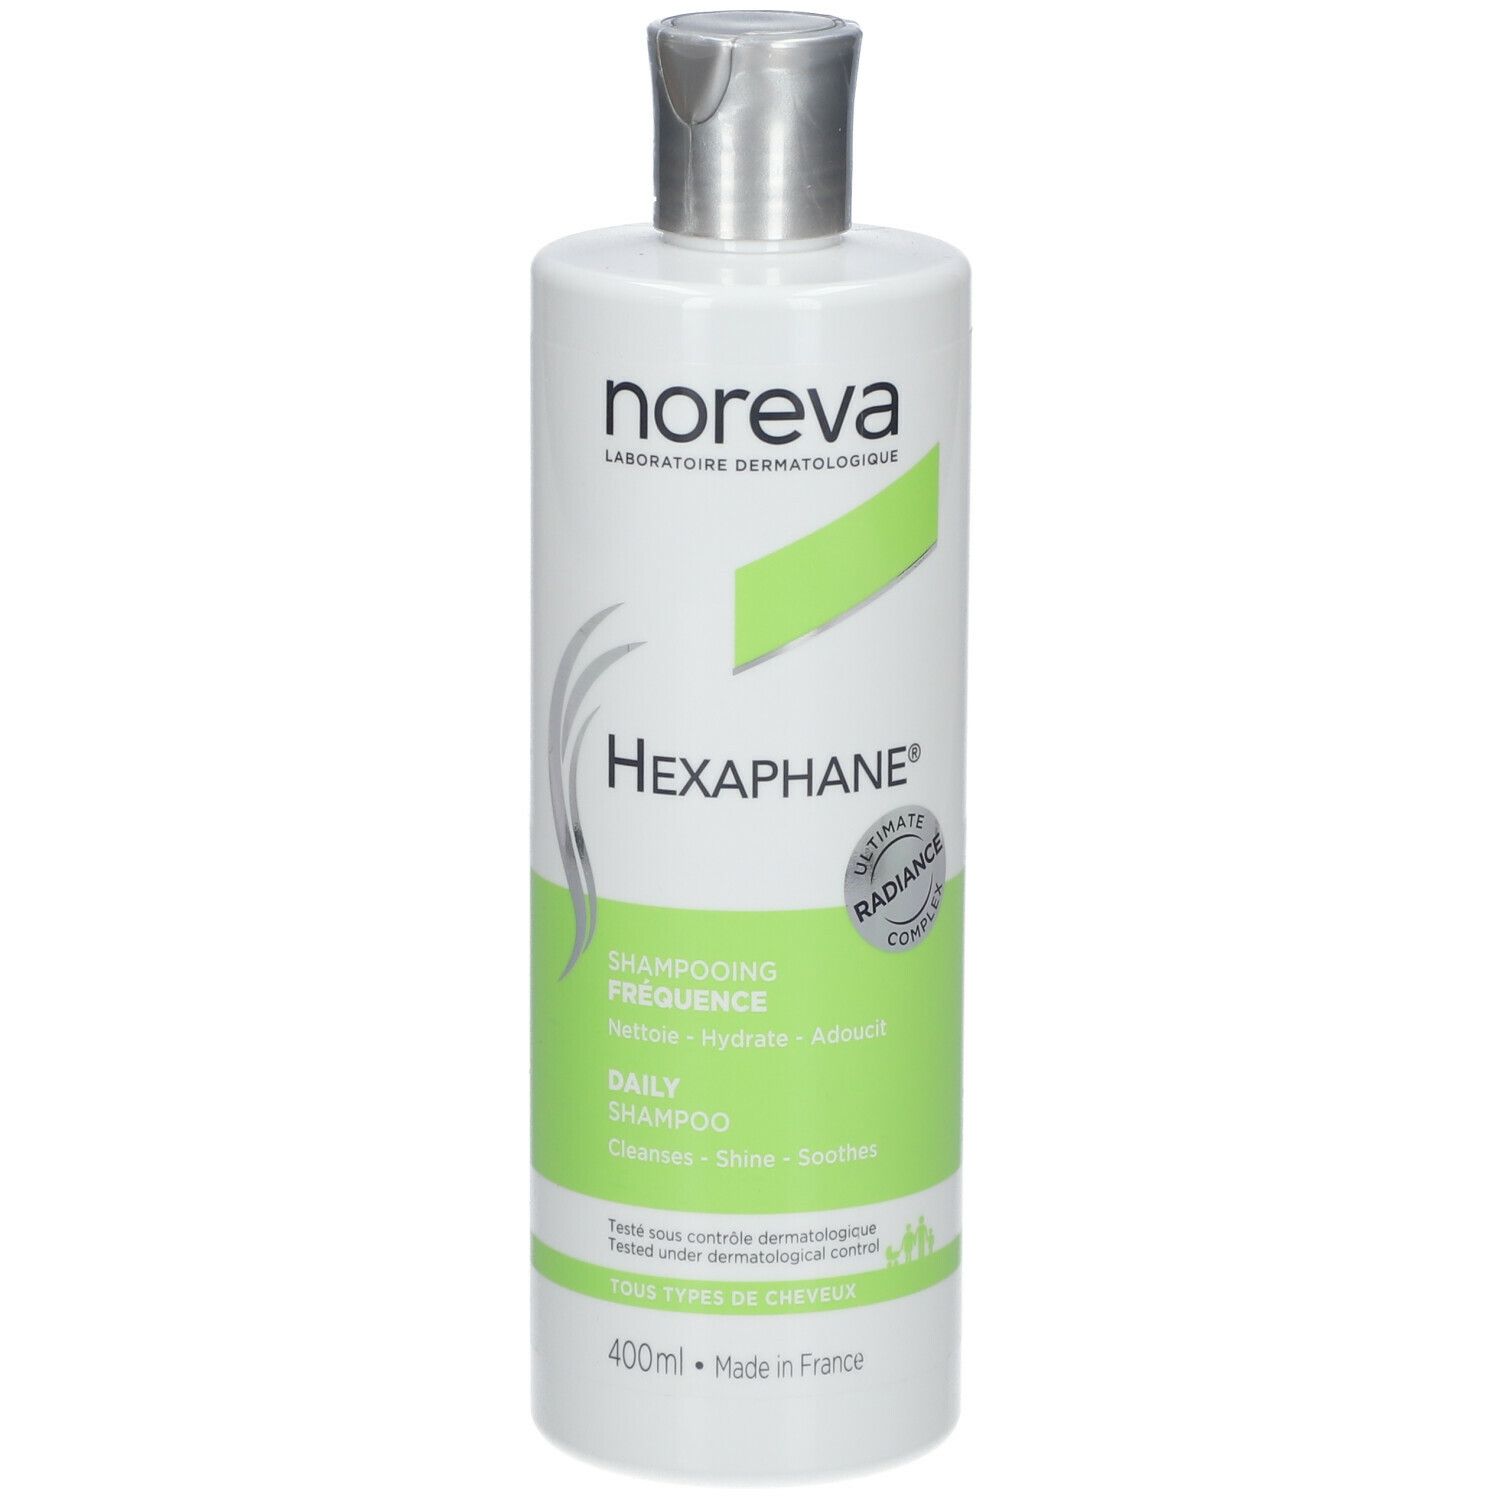 noreva Hexaphane® Shampooing fréquence